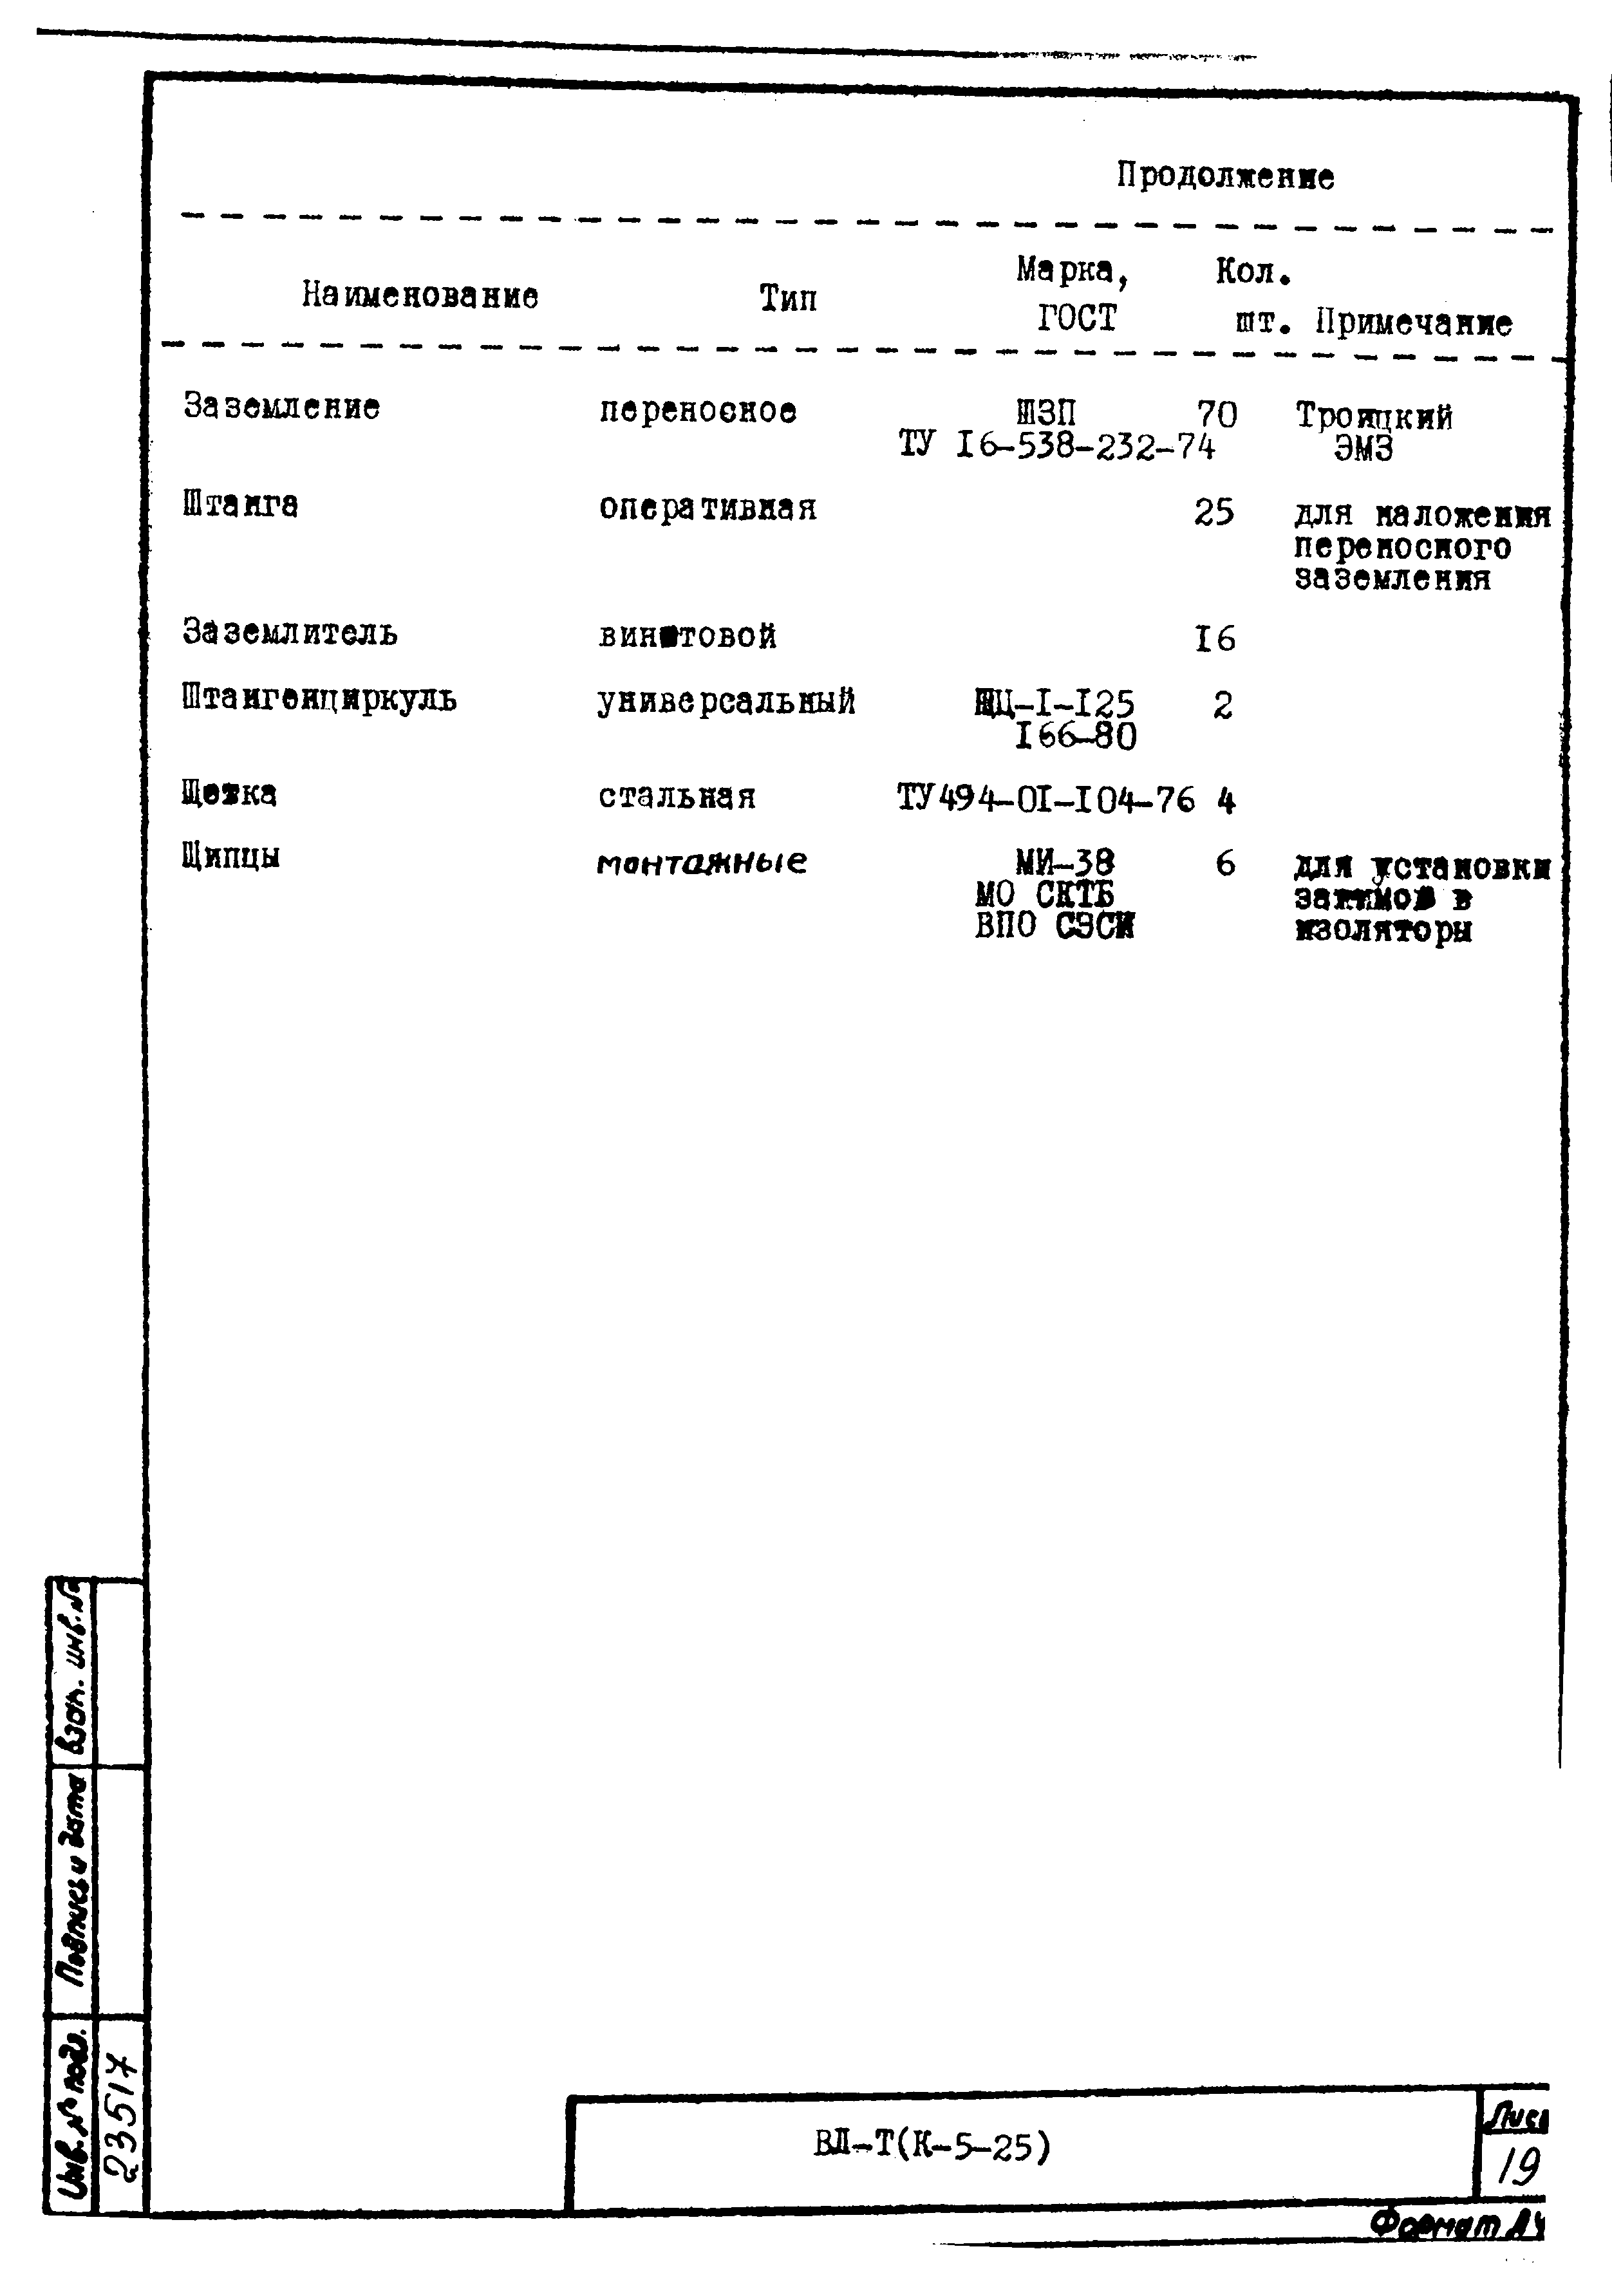 Технологическая карта К-5-25-4